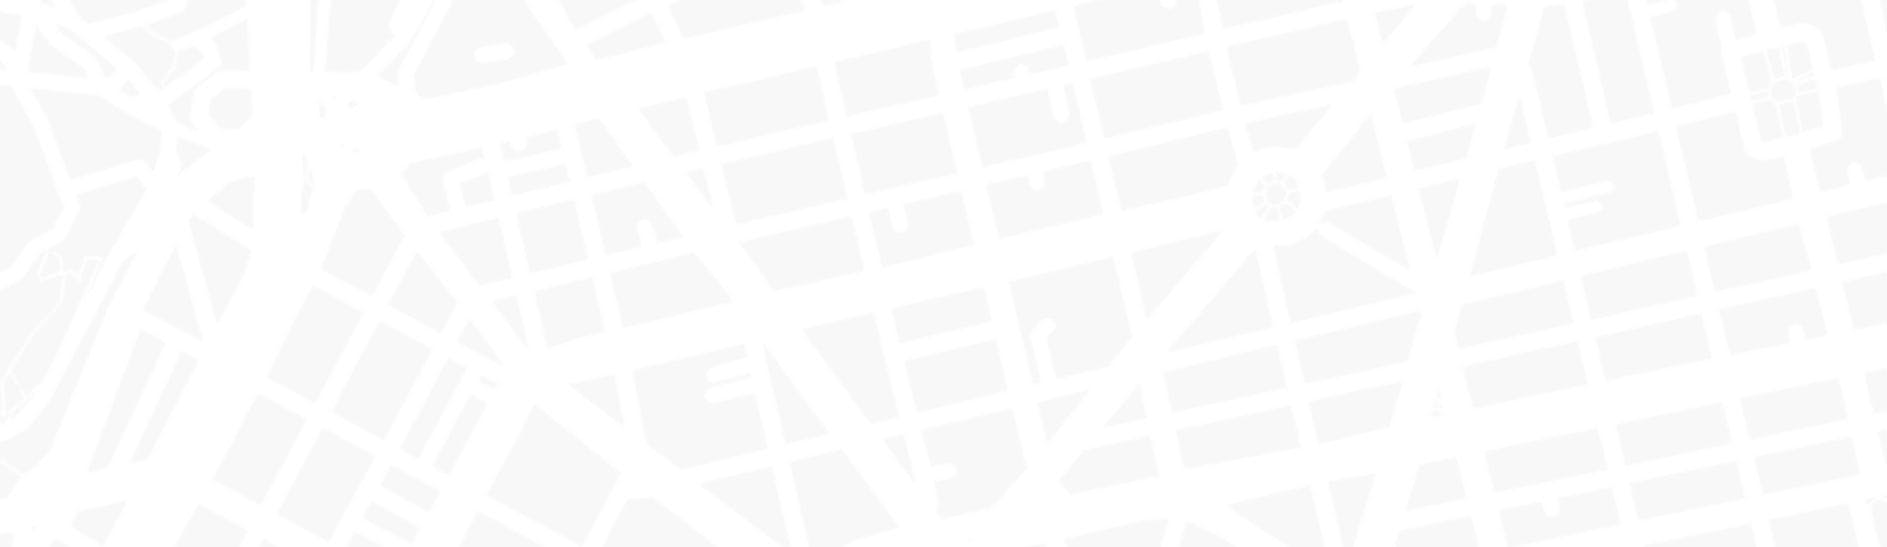 Mapa que muestra la ubicación de Wax Studio, estudio de depilación con cera e hilo, ubicado en la colonia Roma Norte en la Ciudad de México.